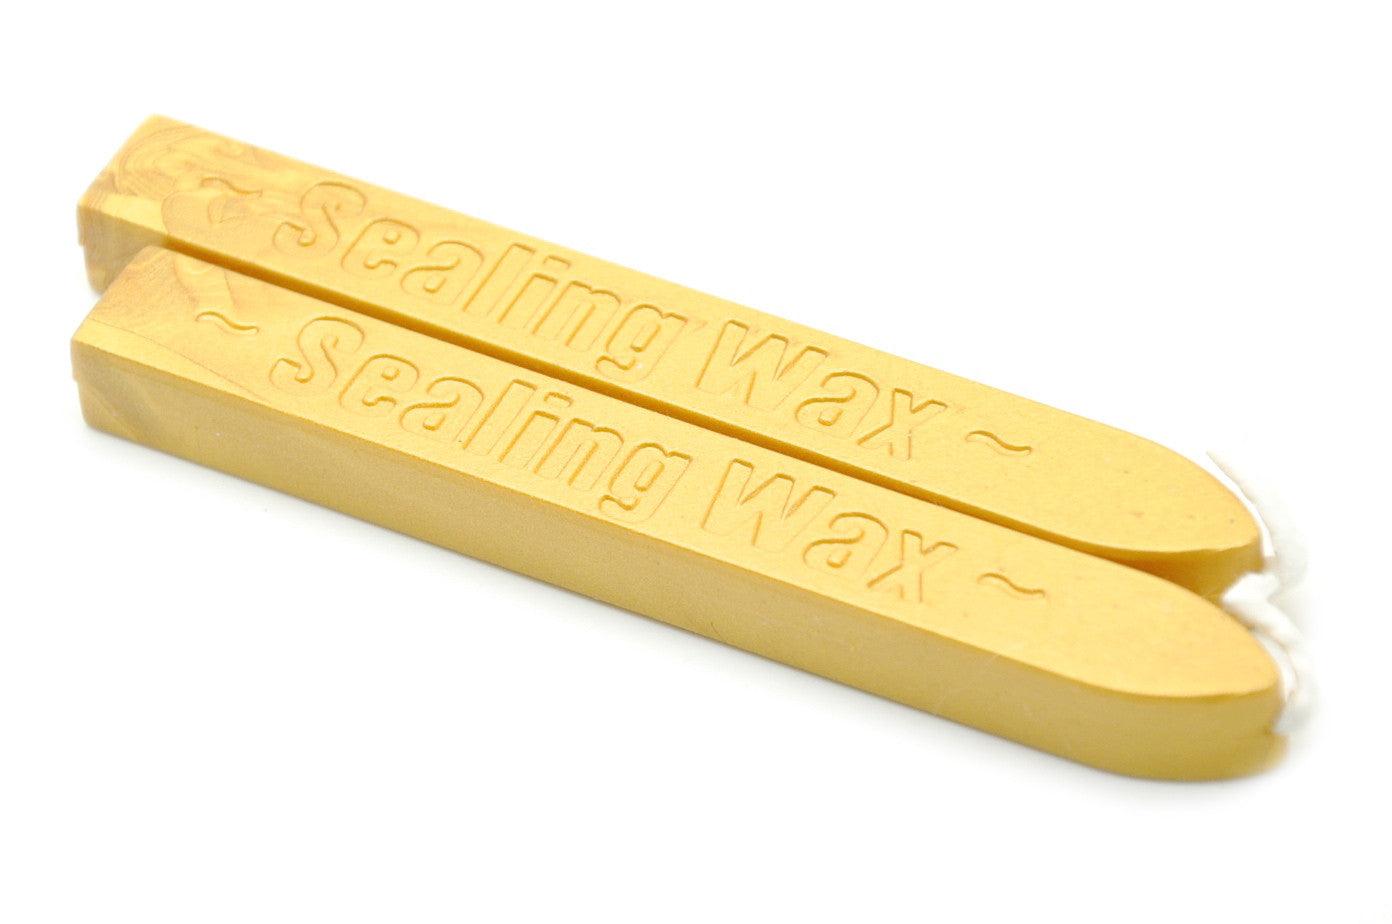 Gold Wick Sealing Wax Stick - Backtozero B20 - Gold, sale, Sealing Wax, Wick Stick, Wick Wax, WWax, wwf